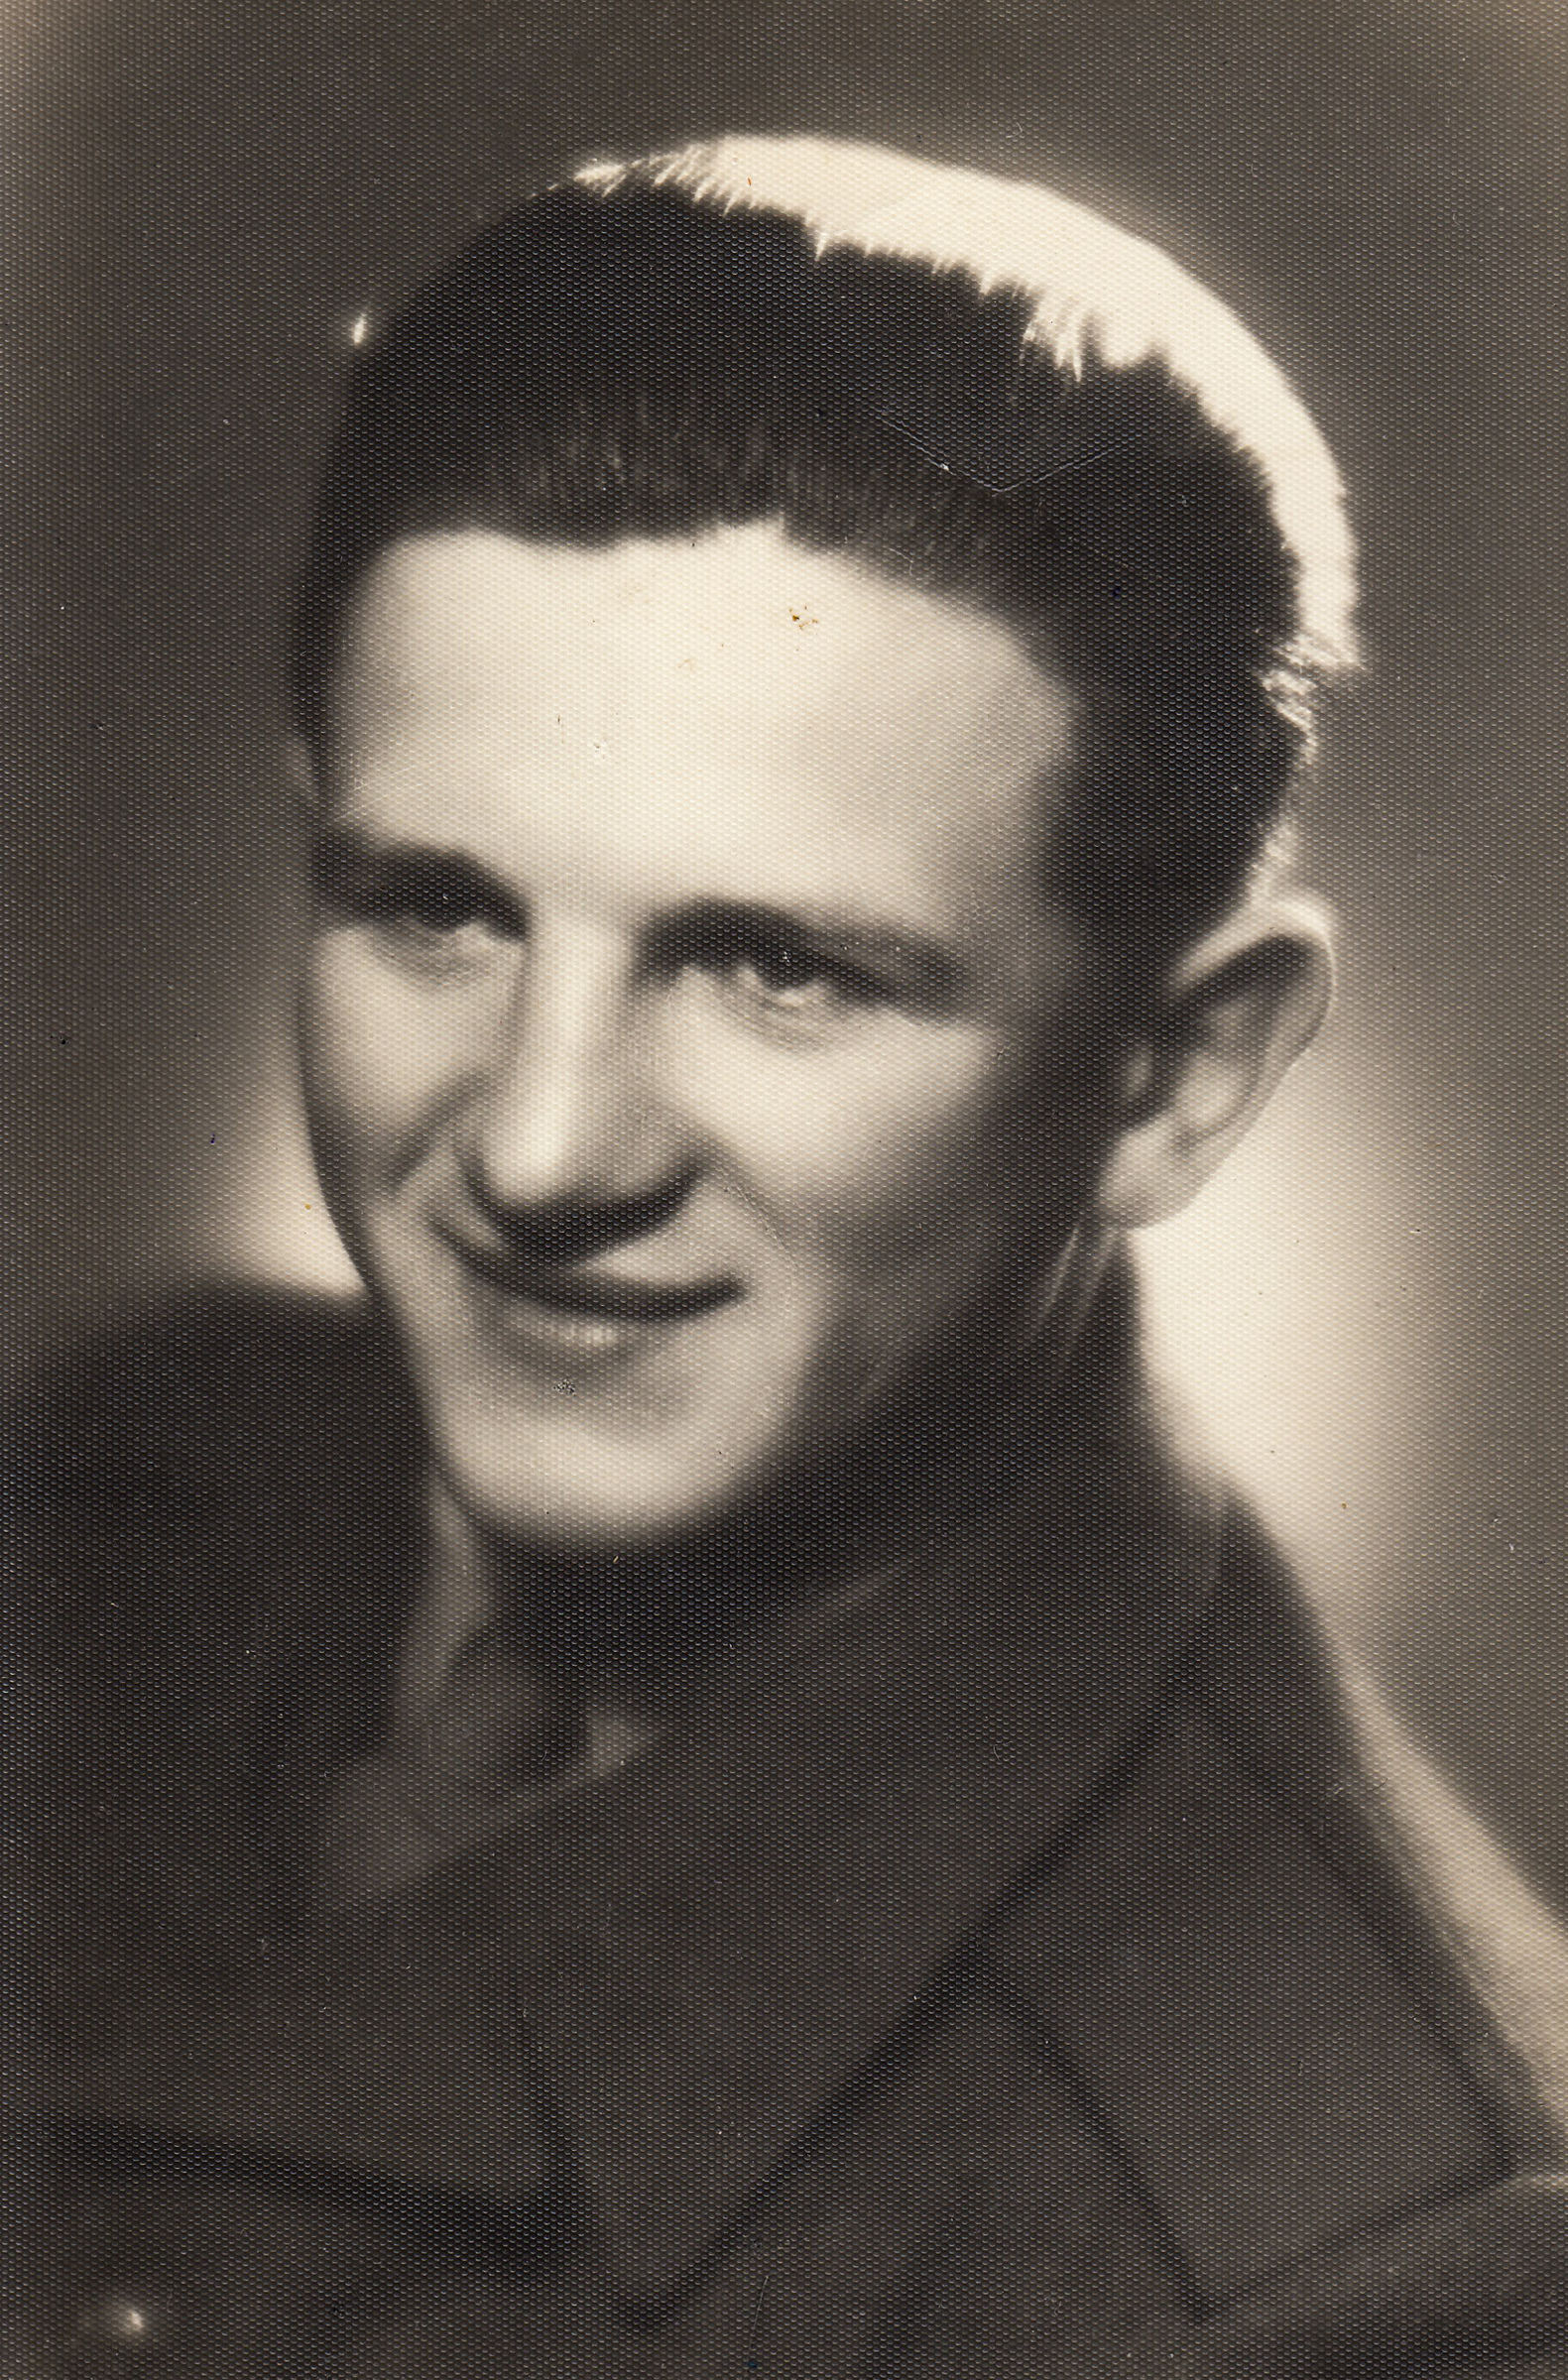 J. Zachara during mandatory military service, 1951